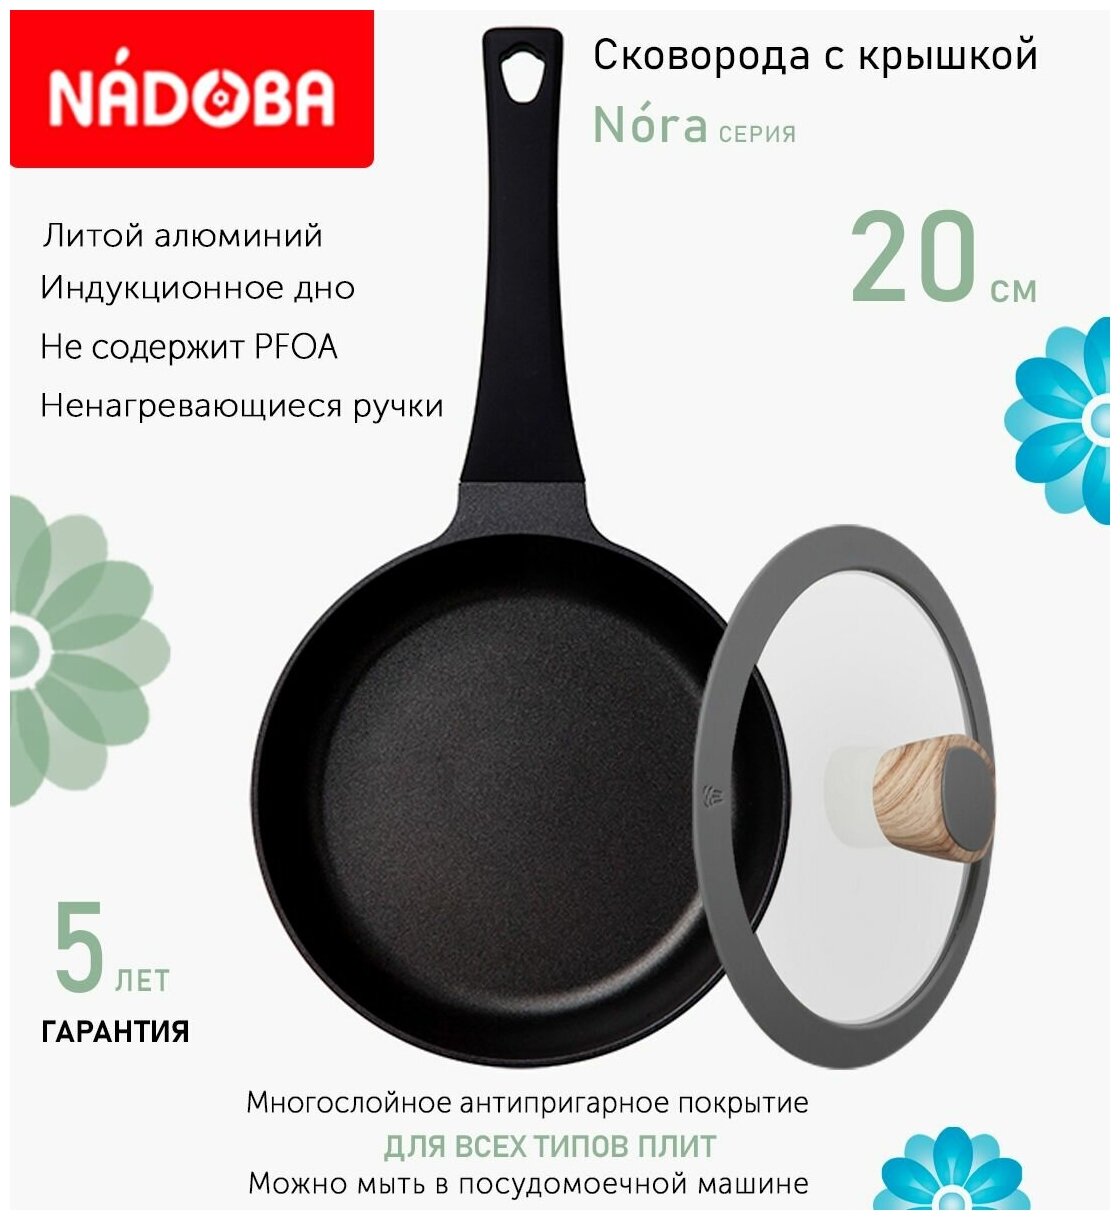 Сковорода с крышкой NADOBA 20см, серия "Nora" (арт. 729519/751215)